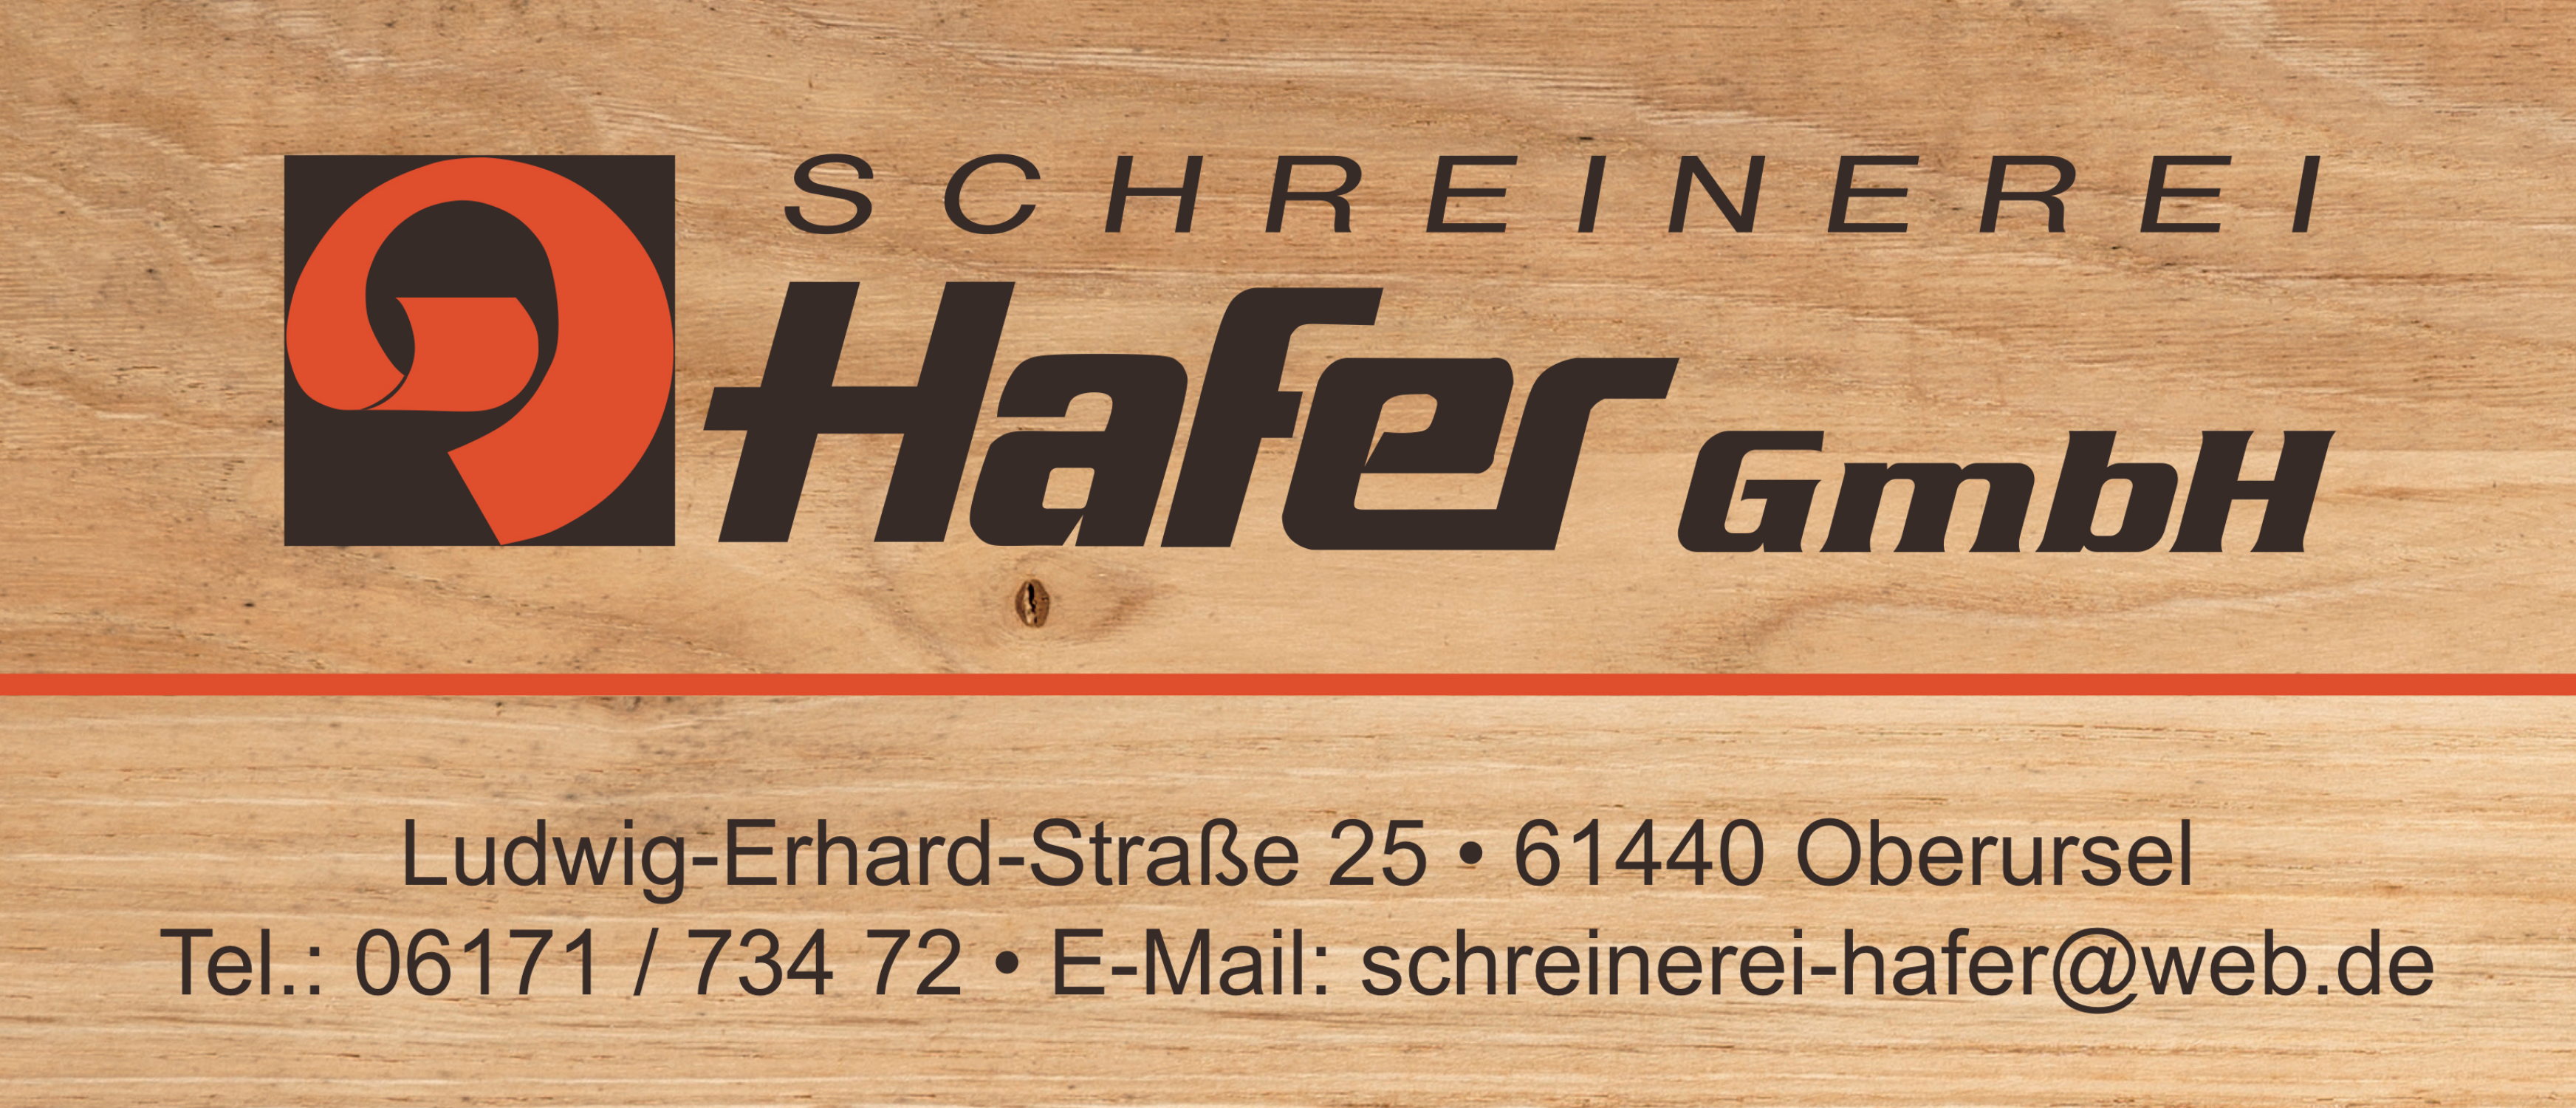 Schreinerei Hafer GmbH